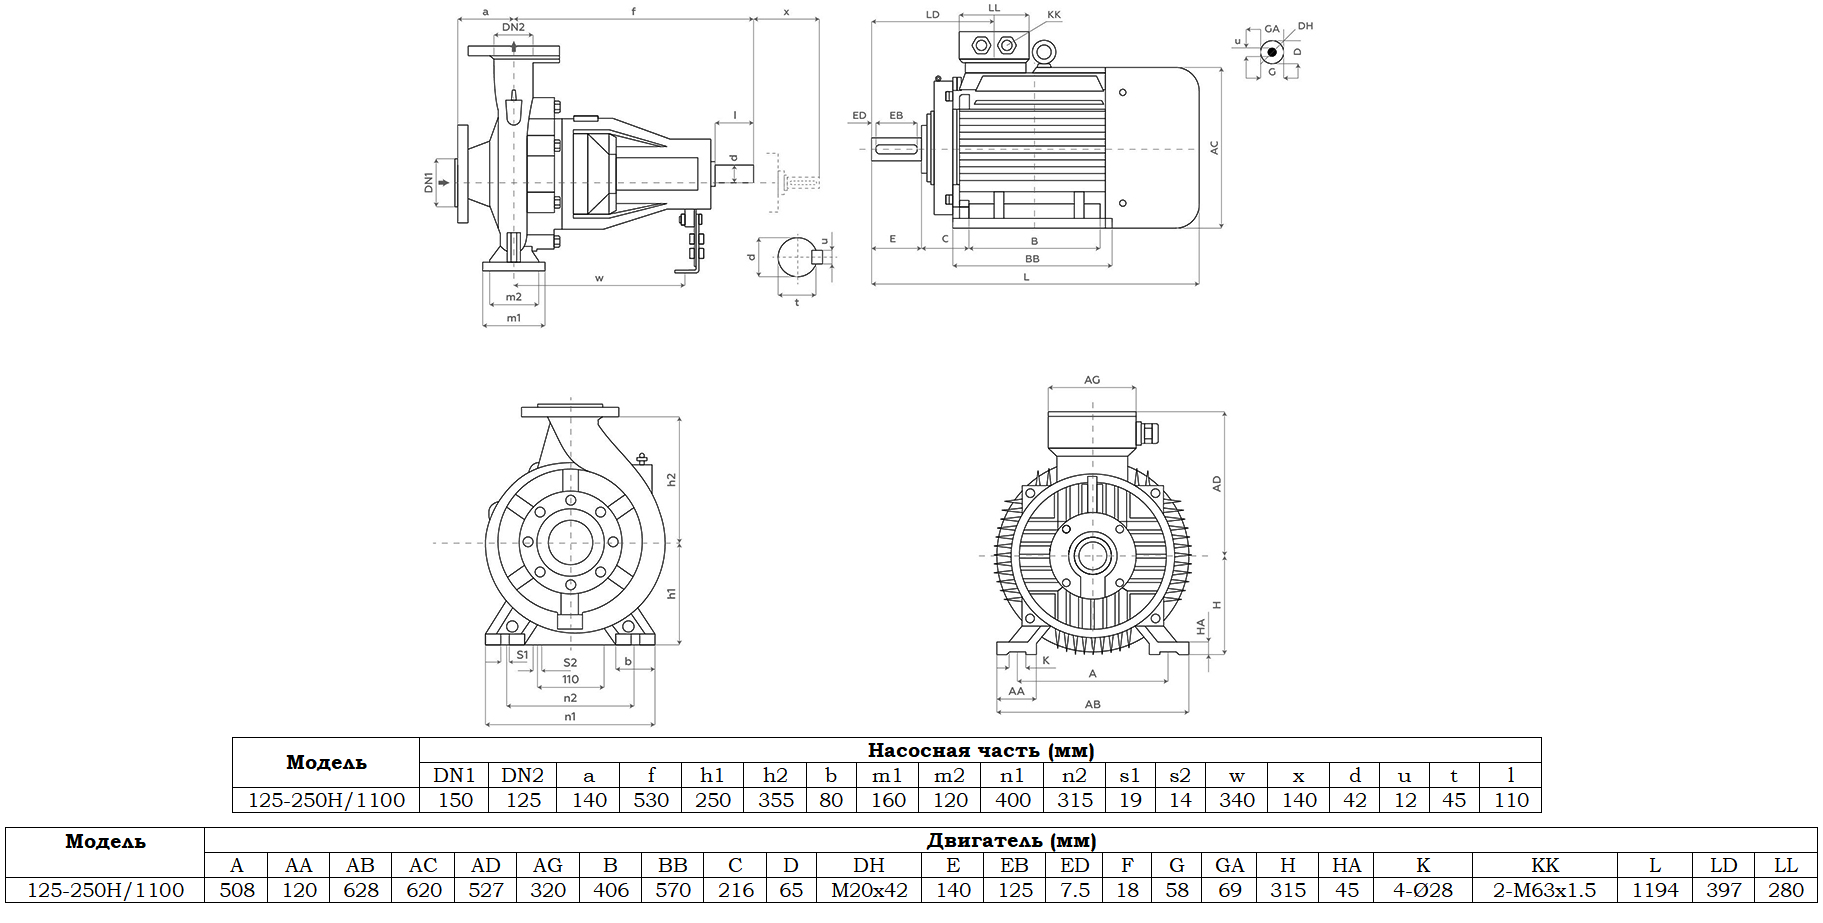 Габаритный чертеж модели Zenova SENSA 125-250H/1100